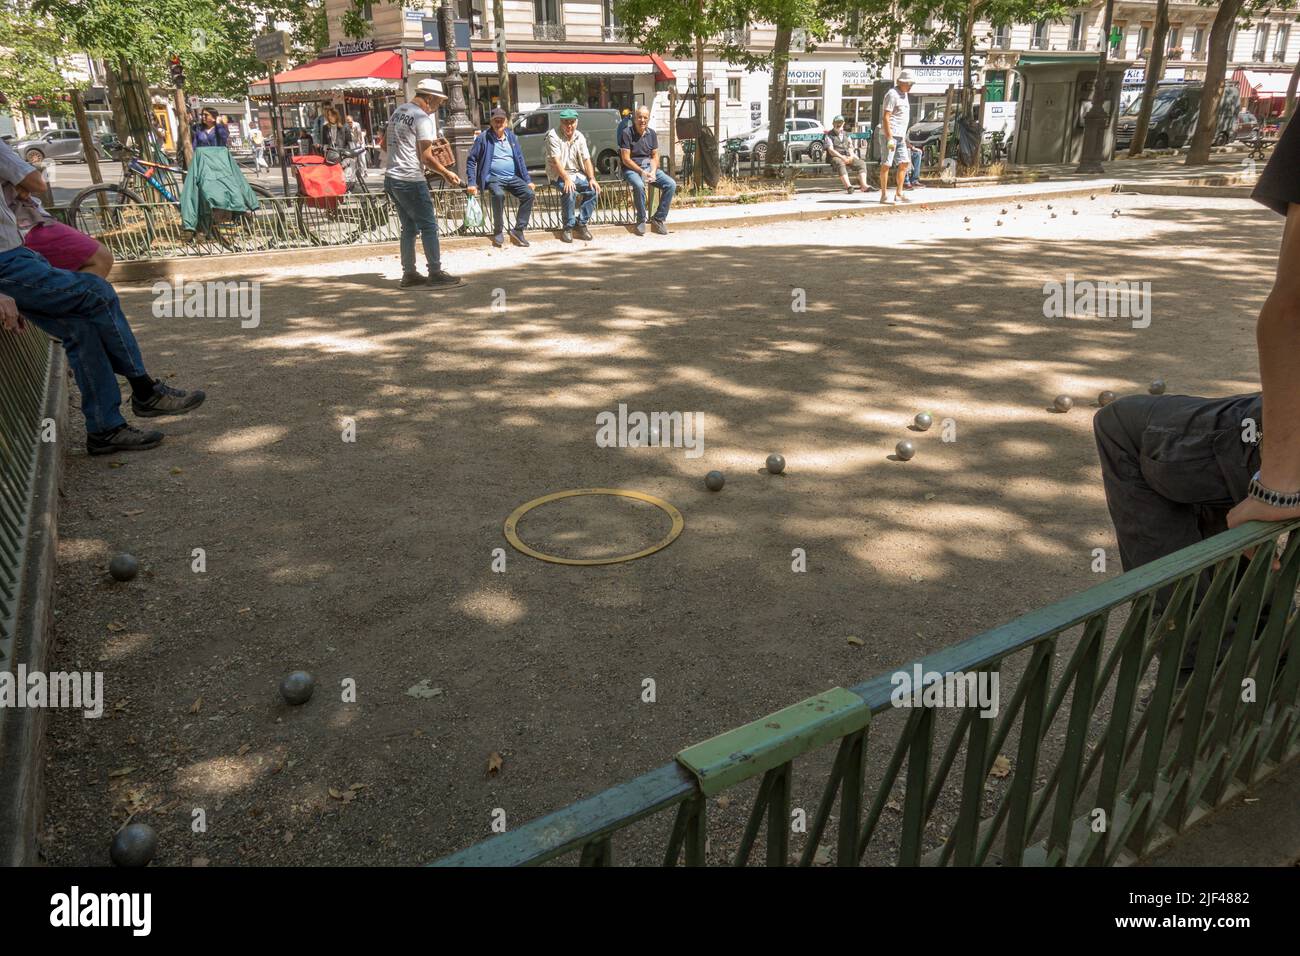 Hommes jouant jeu de boules ou pétanque au chemin vert, Paris, France. Banque D'Images